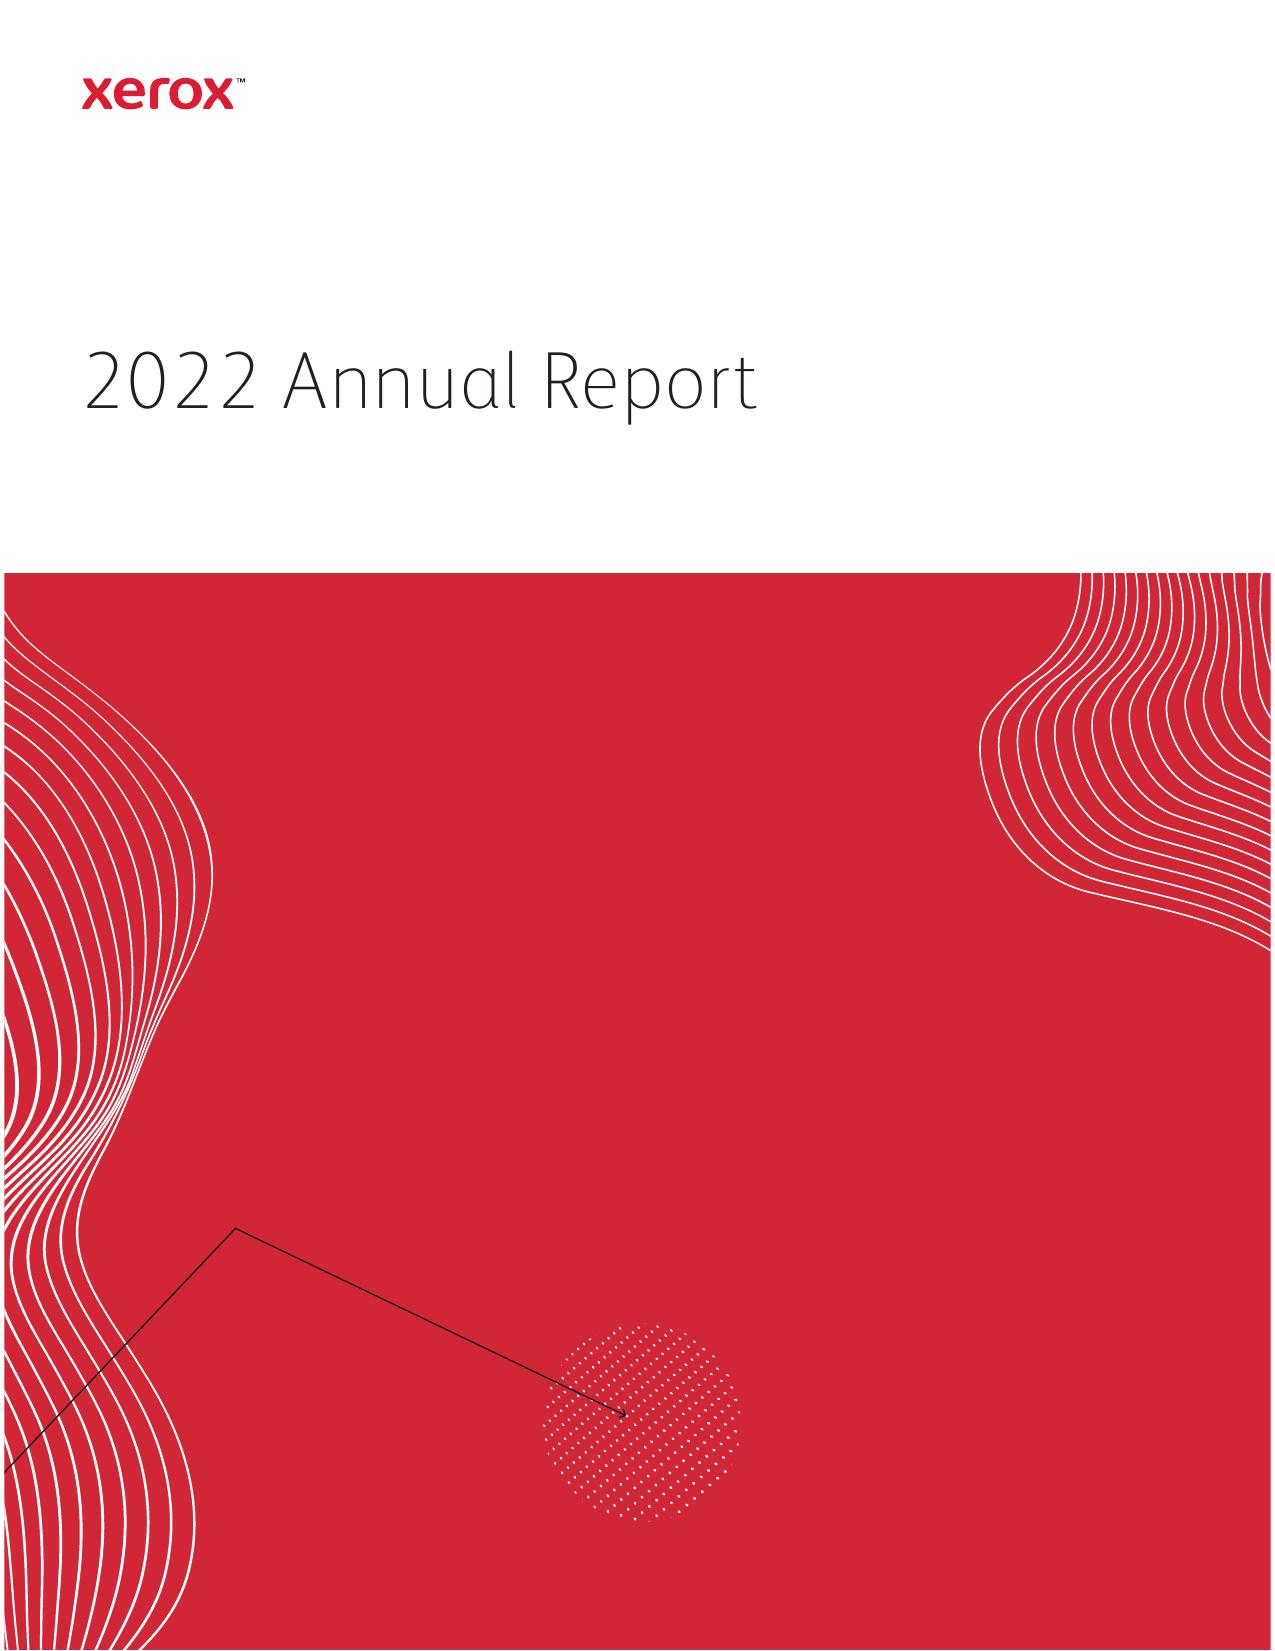 XEROX 2022 Annual Report